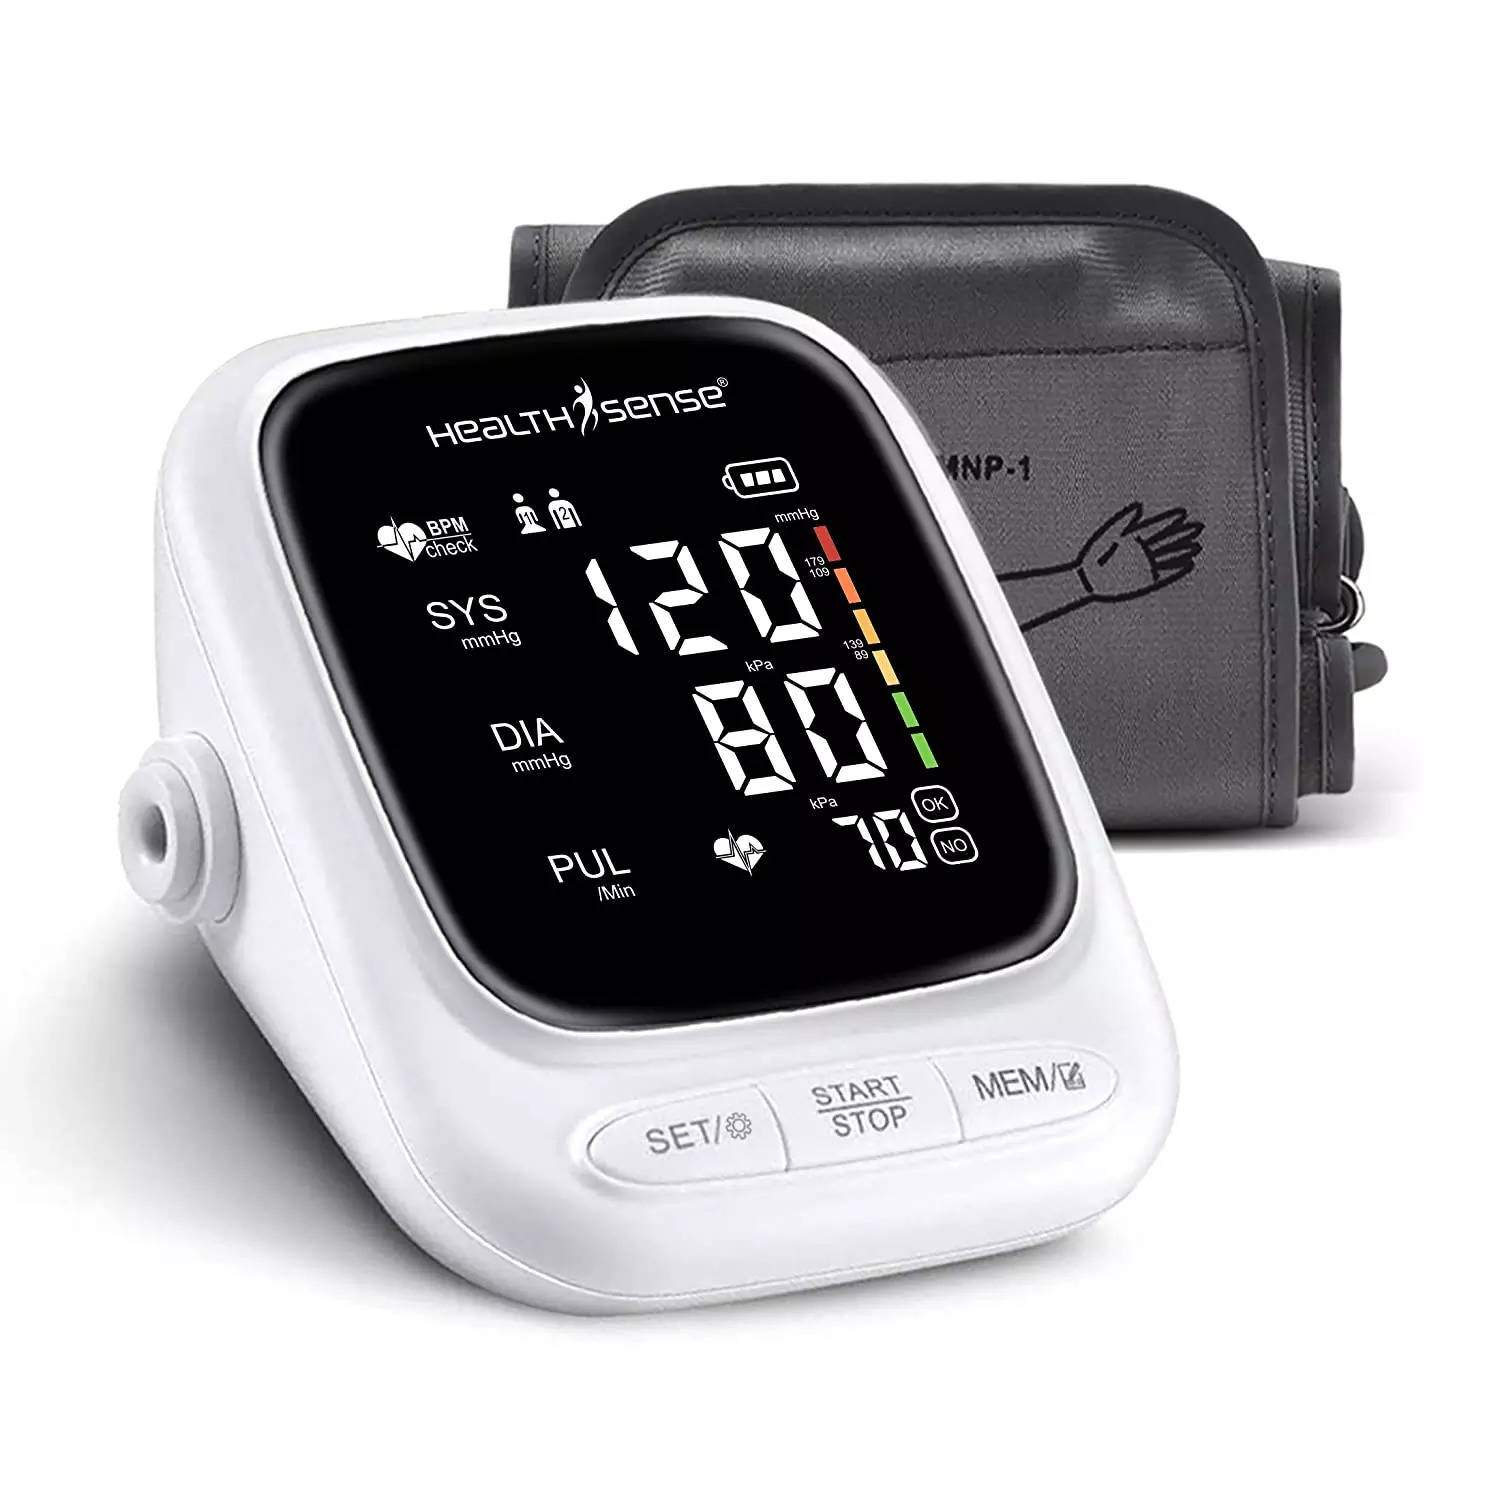 Buy HUAWEI WATCH D - Blood Pressure Watch - HUAWEI UK